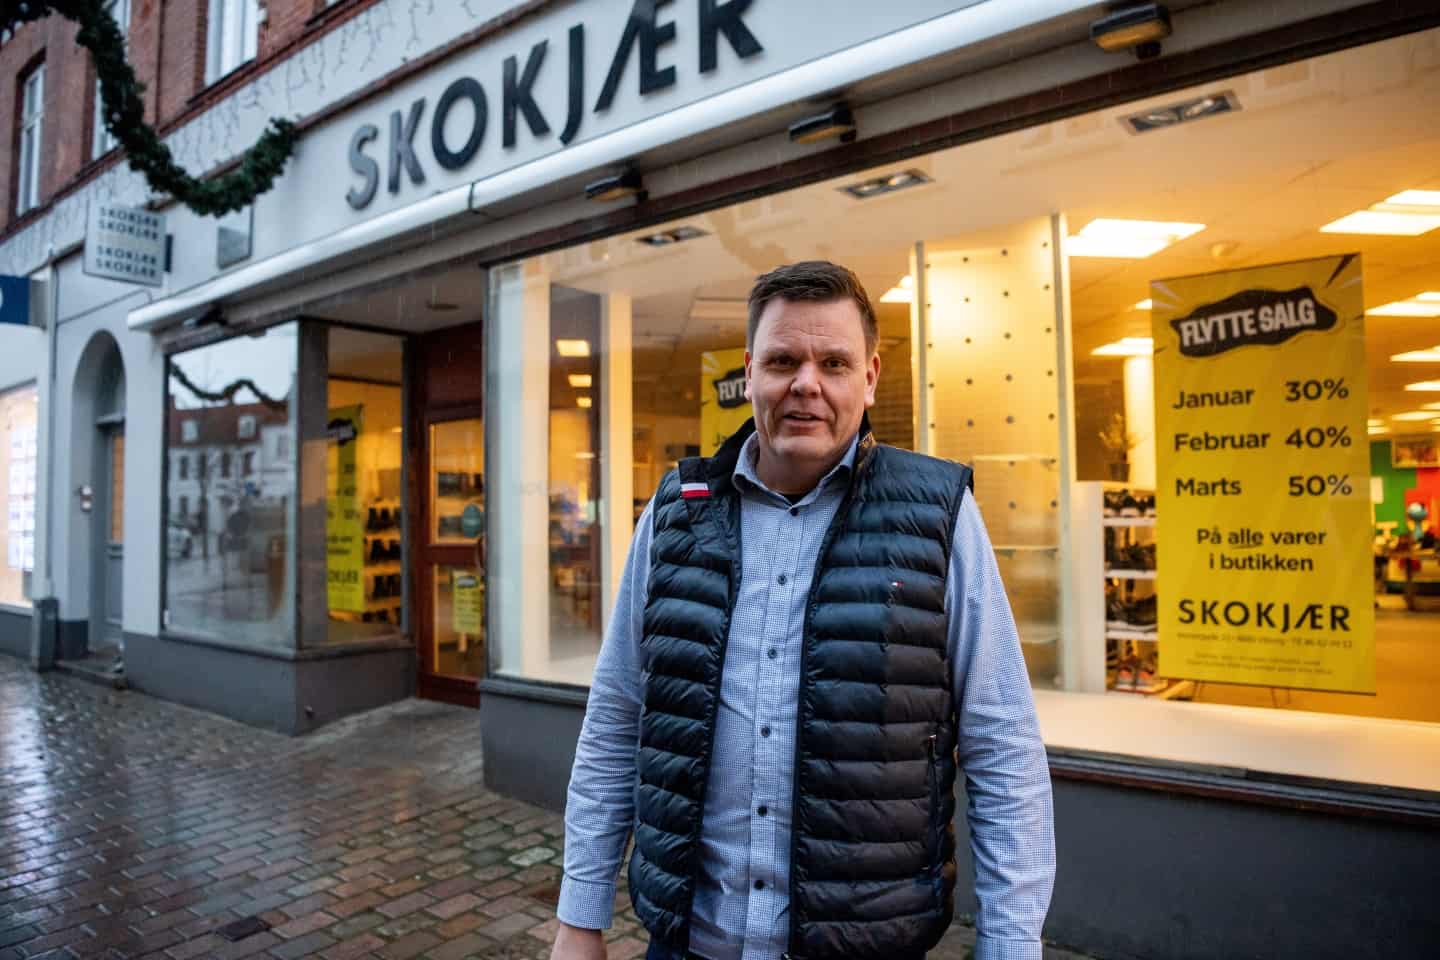 Det bli'r i familien - og i gågaden: René rykker sin skobutik i fætterens tidligere lokaler efter 24 år i | ugeavisen.dk